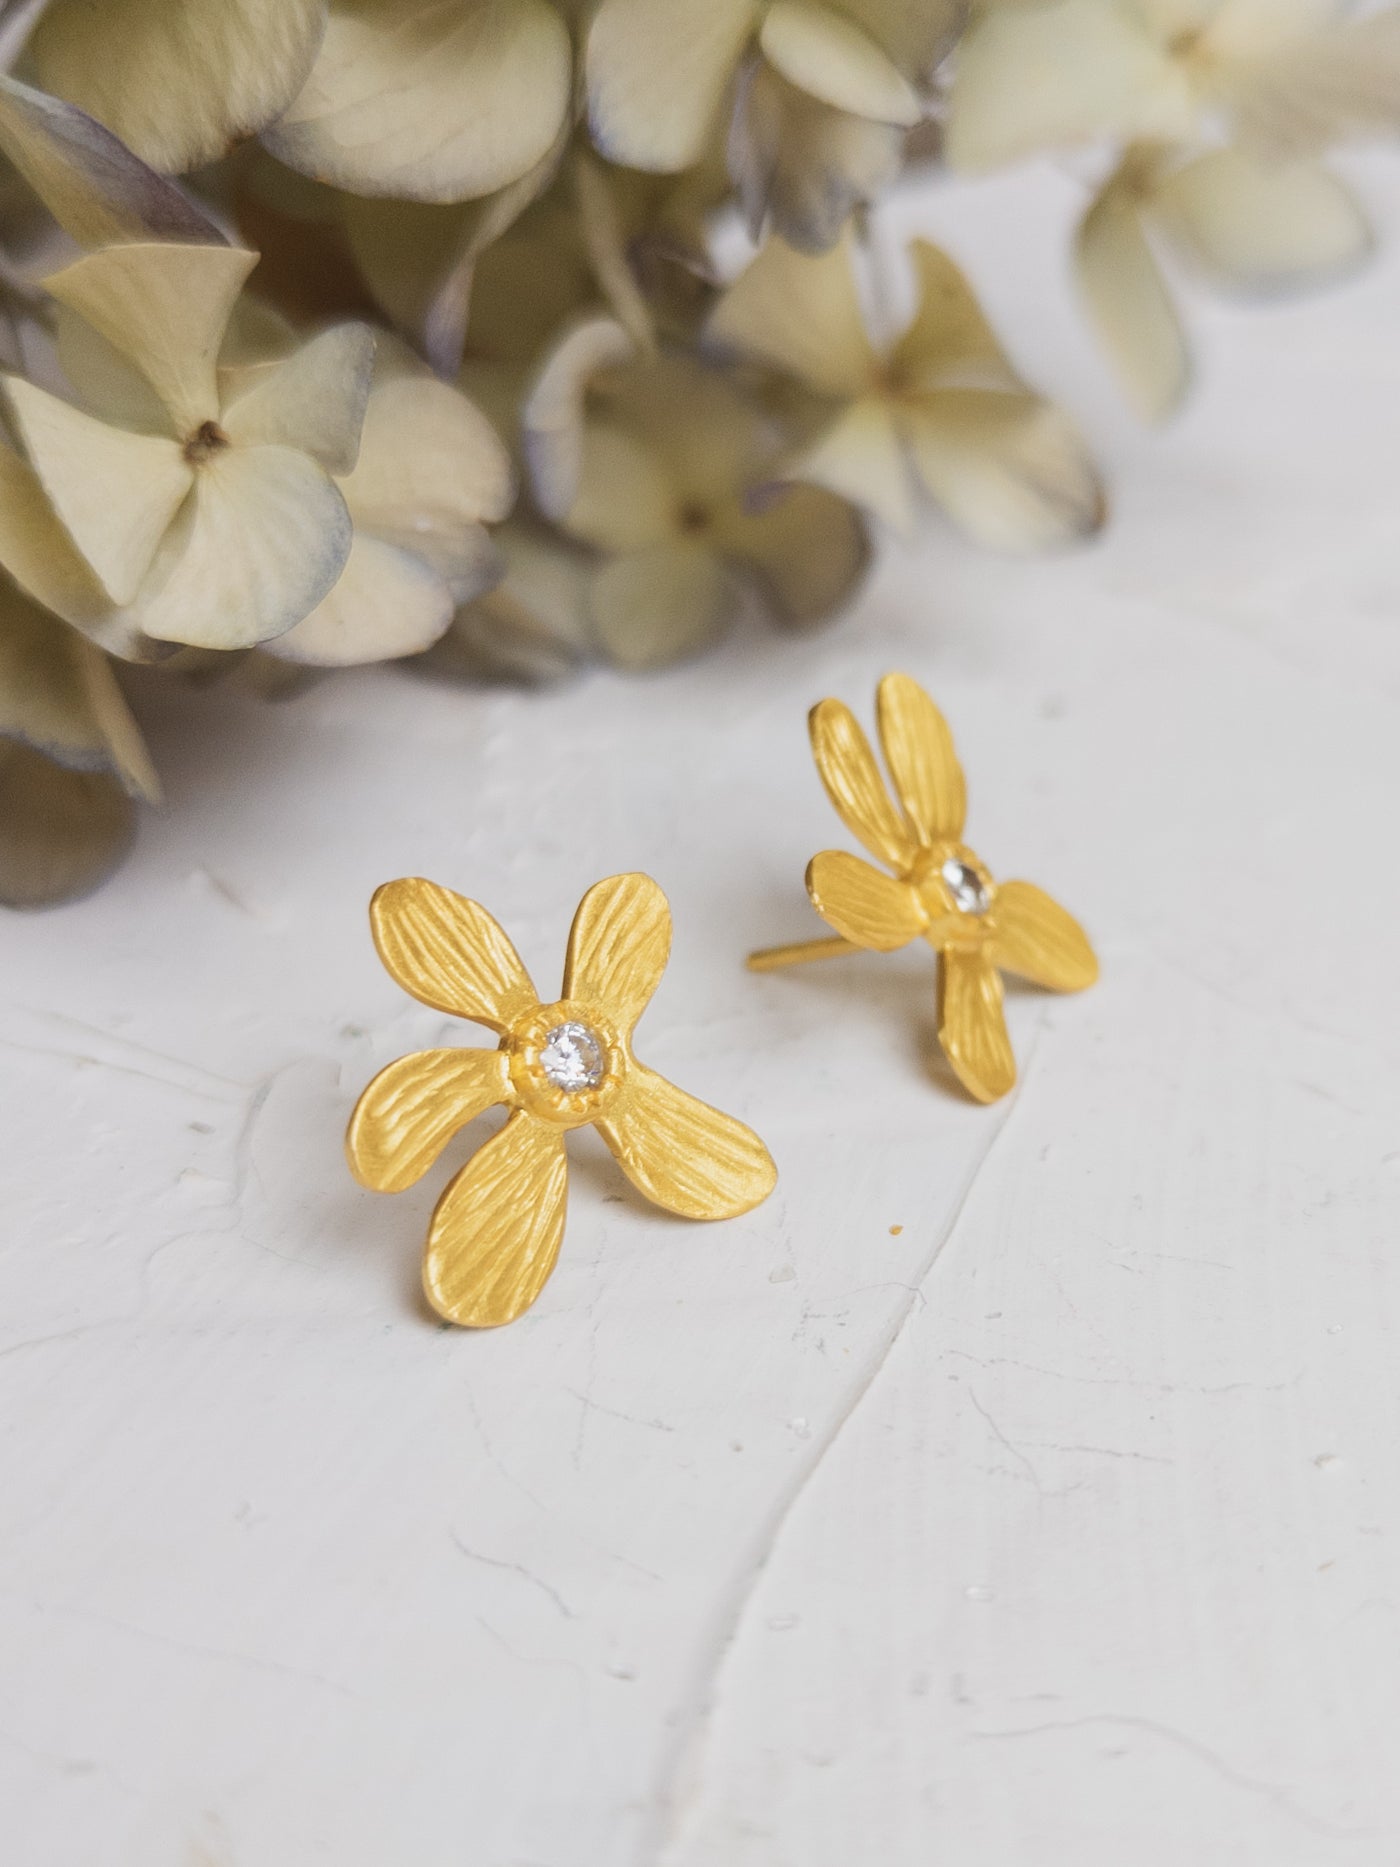 Five Petal Wild Flower Earrings